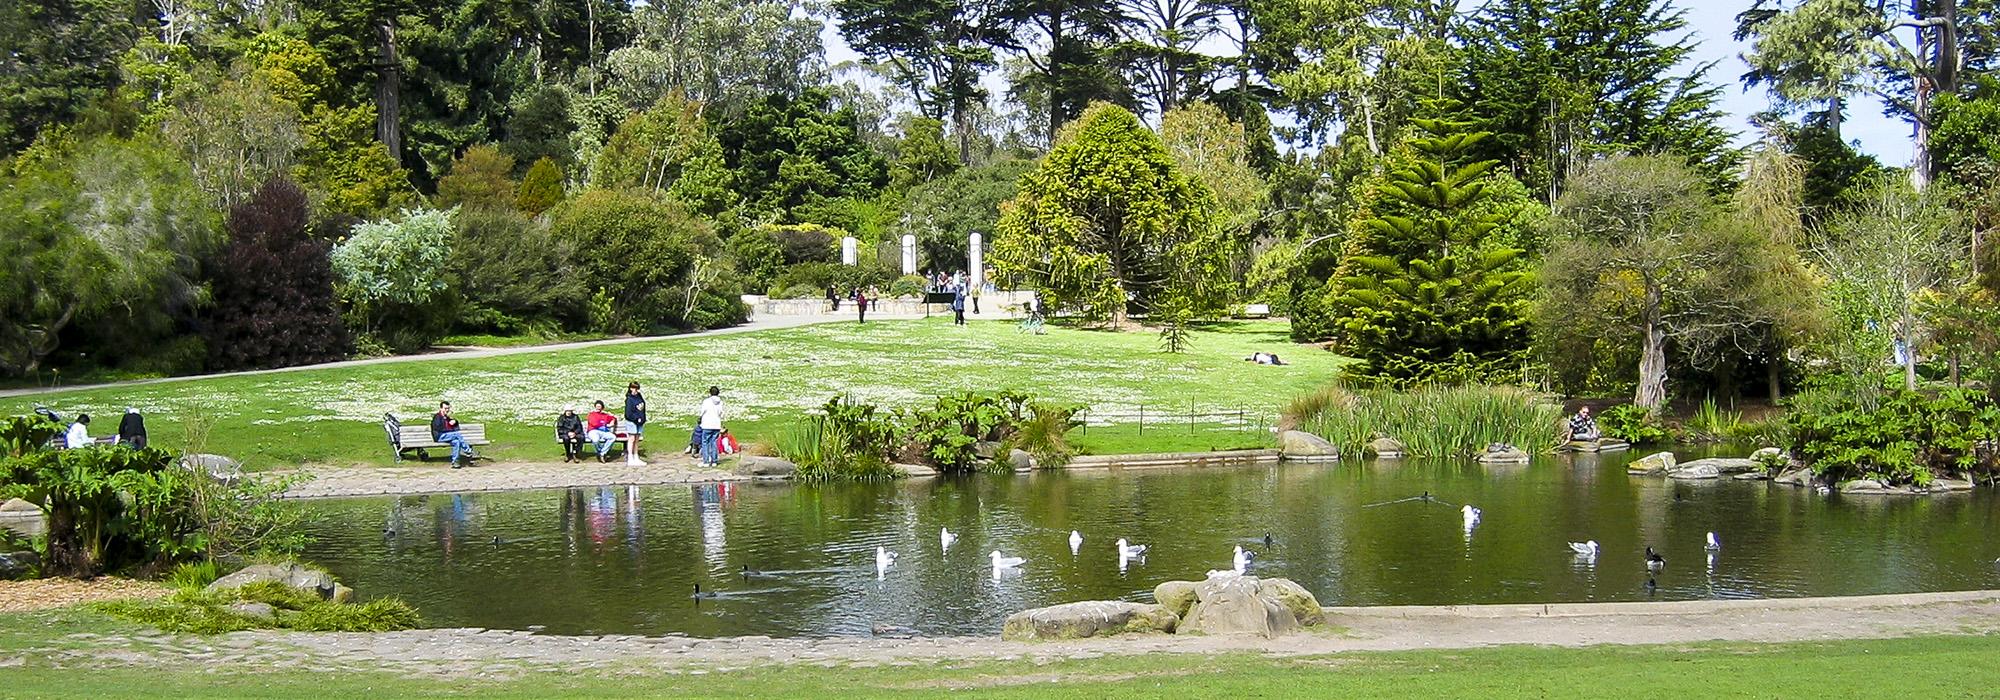 Strybing Arboretum, San Francisco, CA